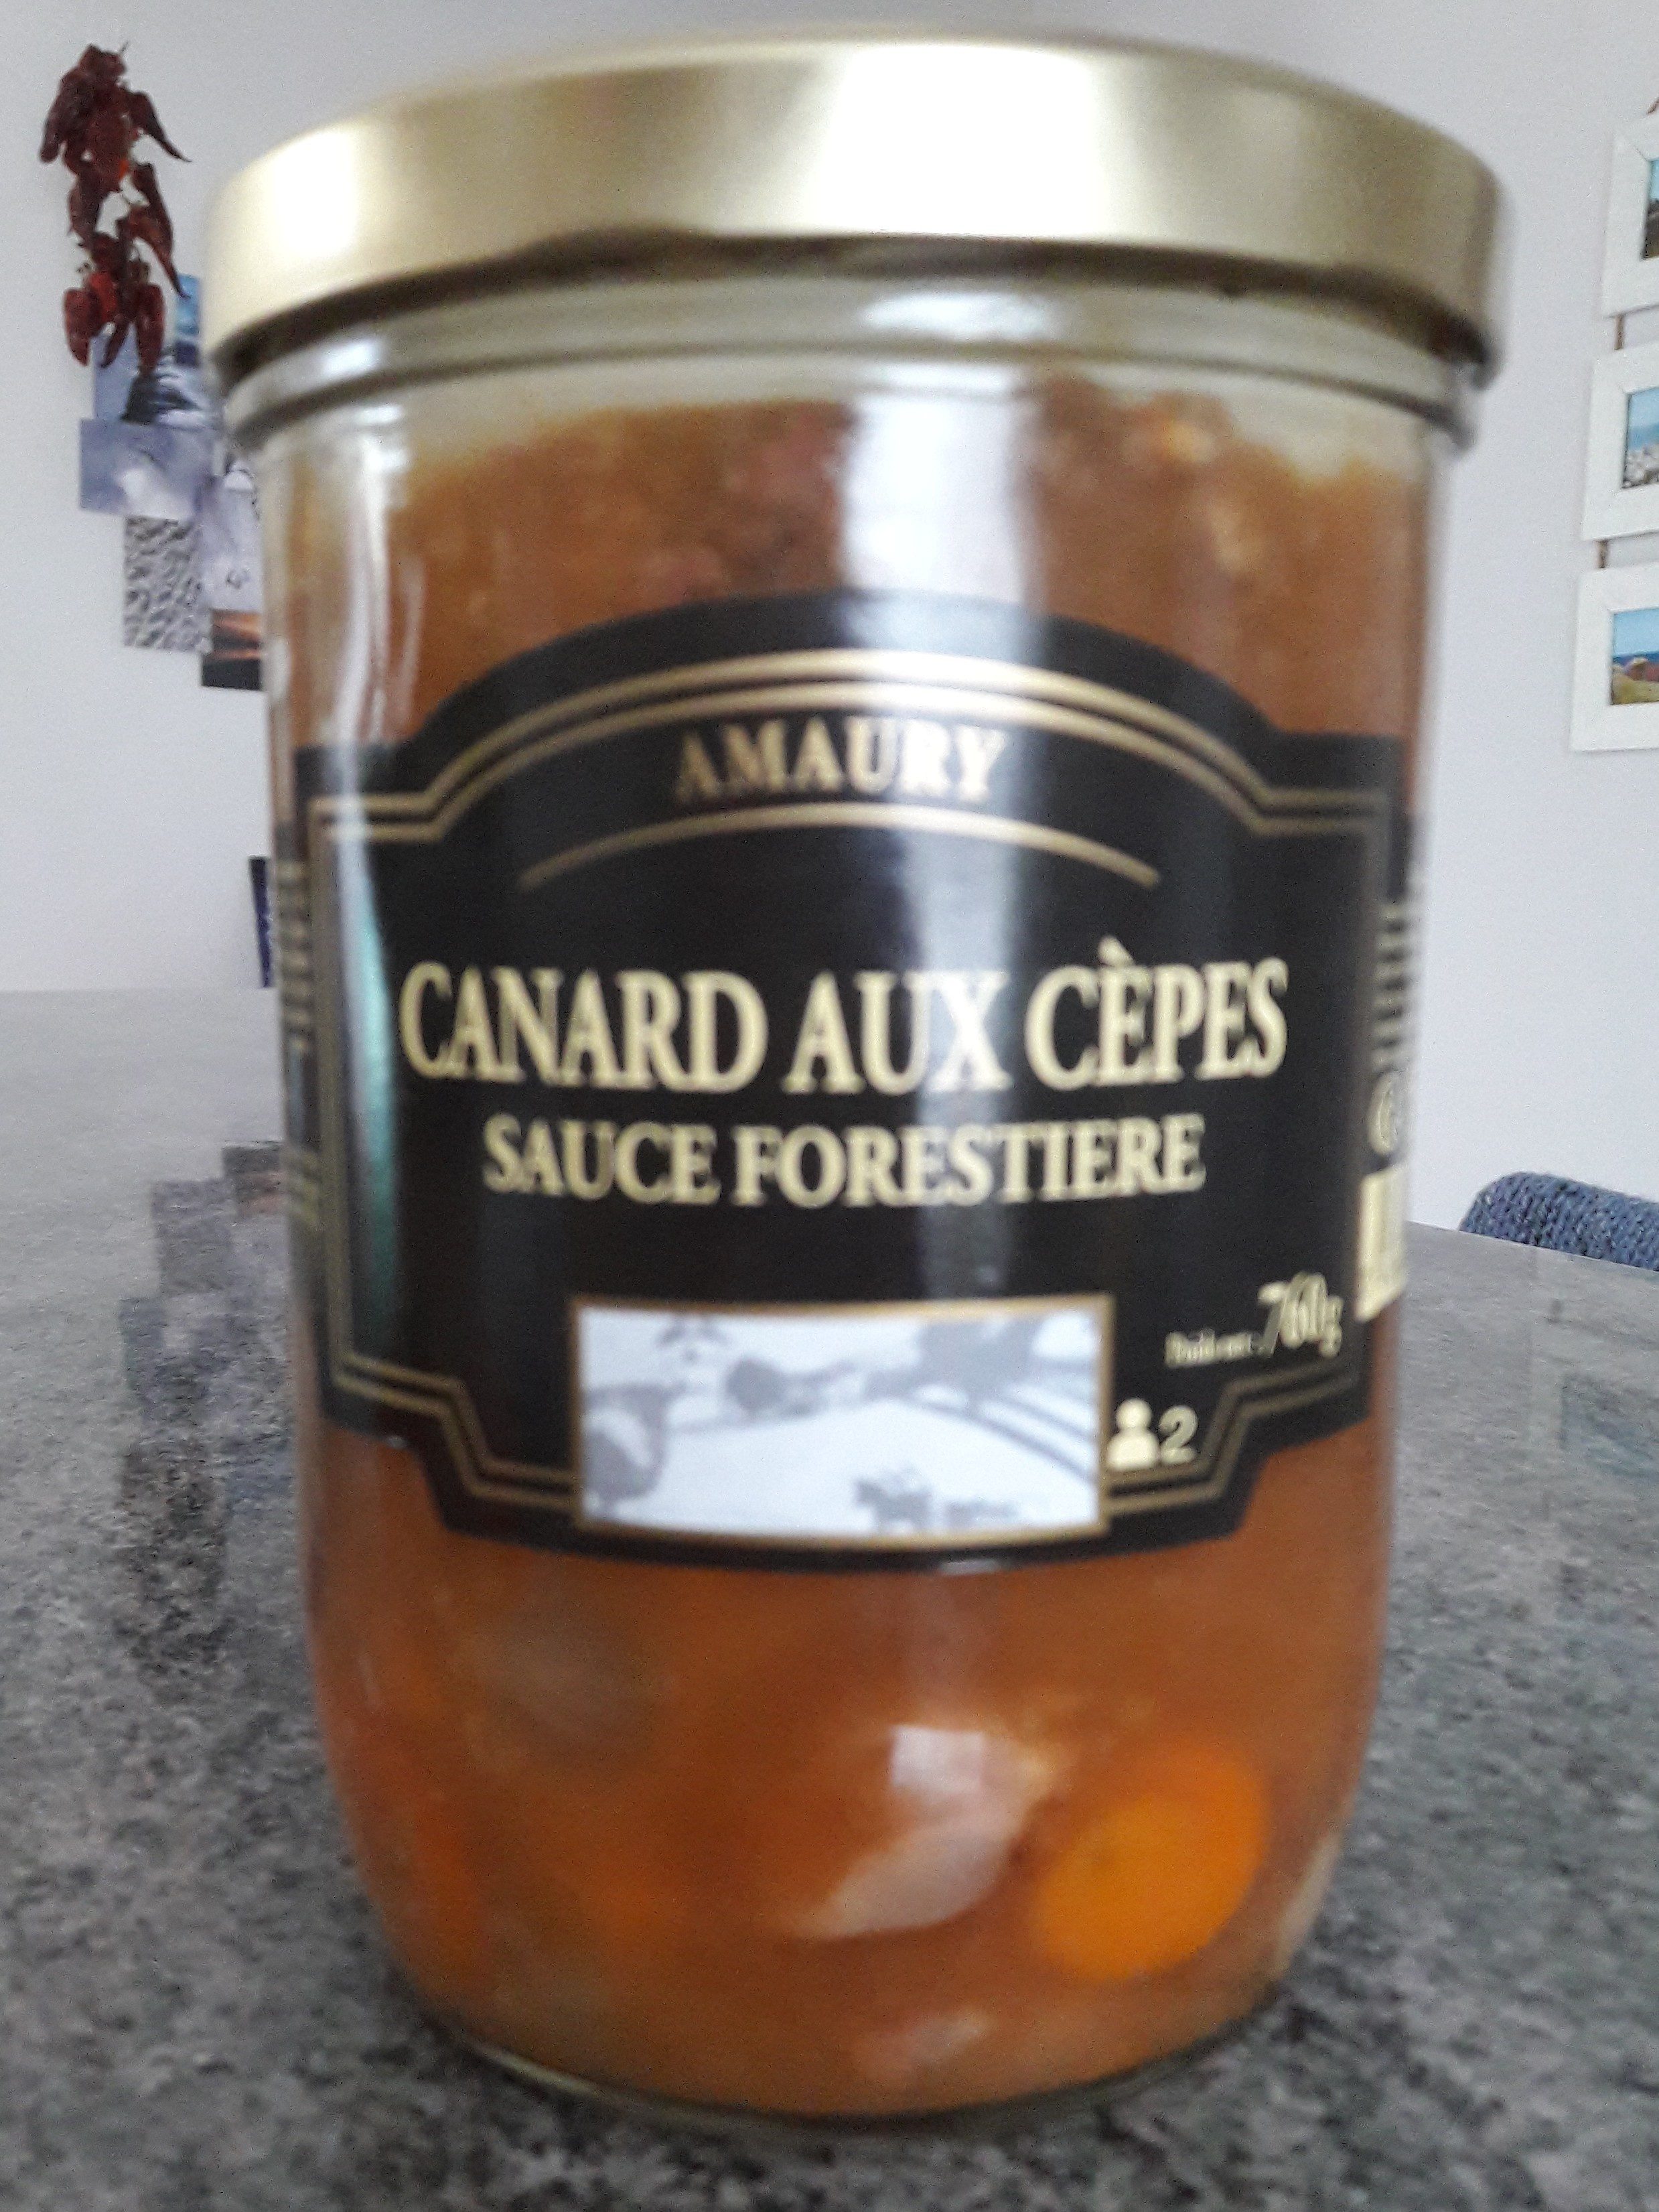 Canard Aux Cèpes - Sauce Forestière - Ingredients - fr